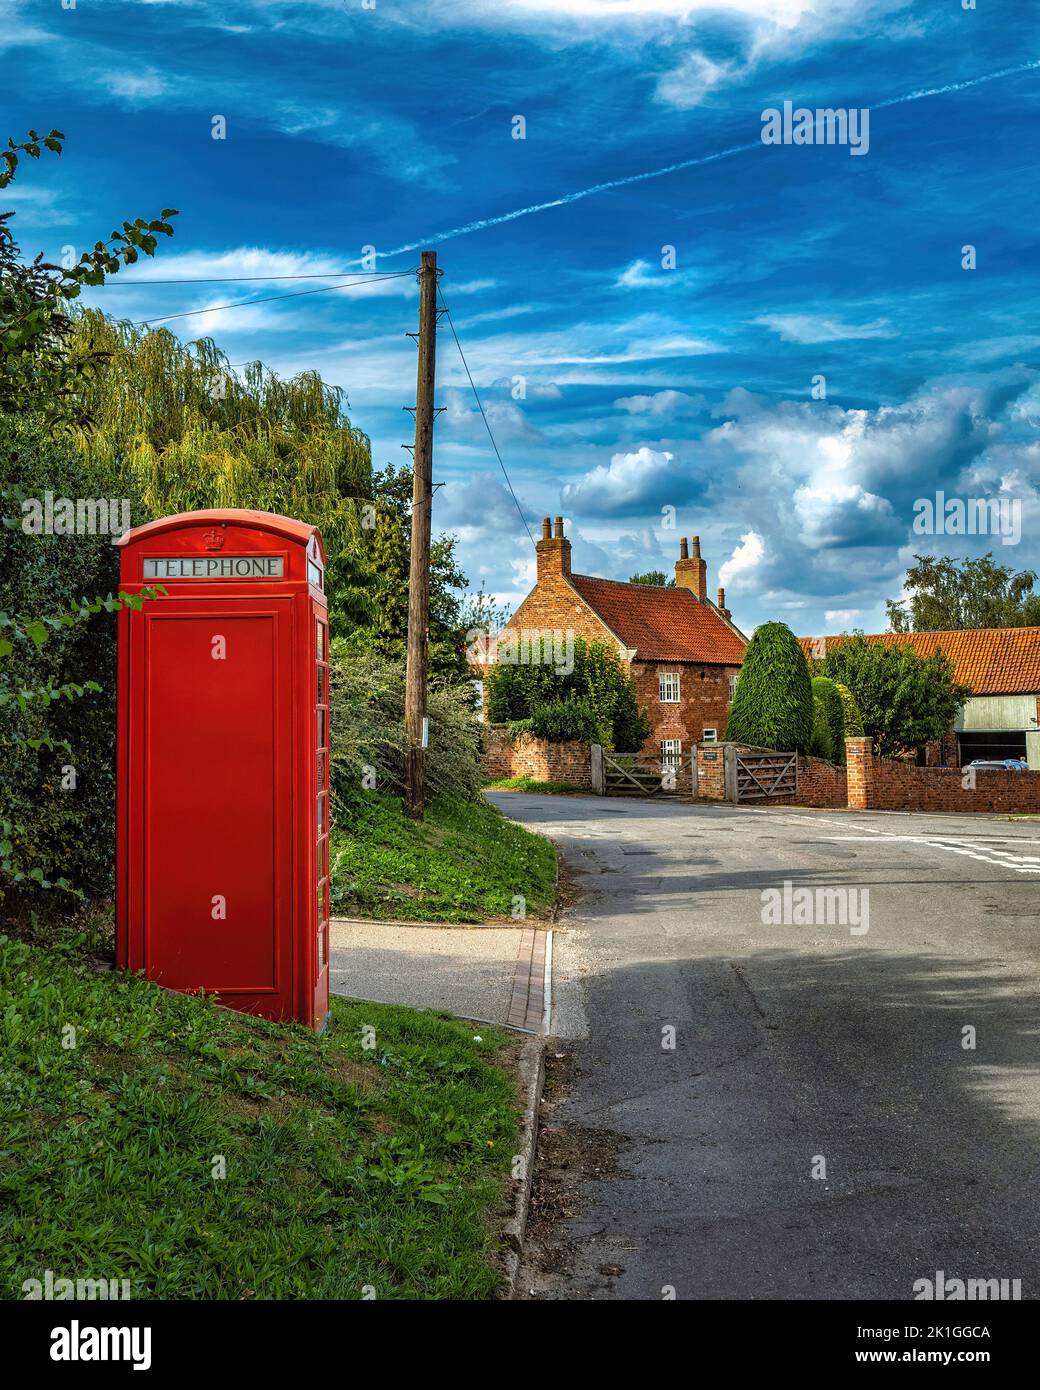 Situado en North Nottinghamshire Scooby es un pueblo muy pintoresco lleno de encanto inglés antiguo. Foto de stock